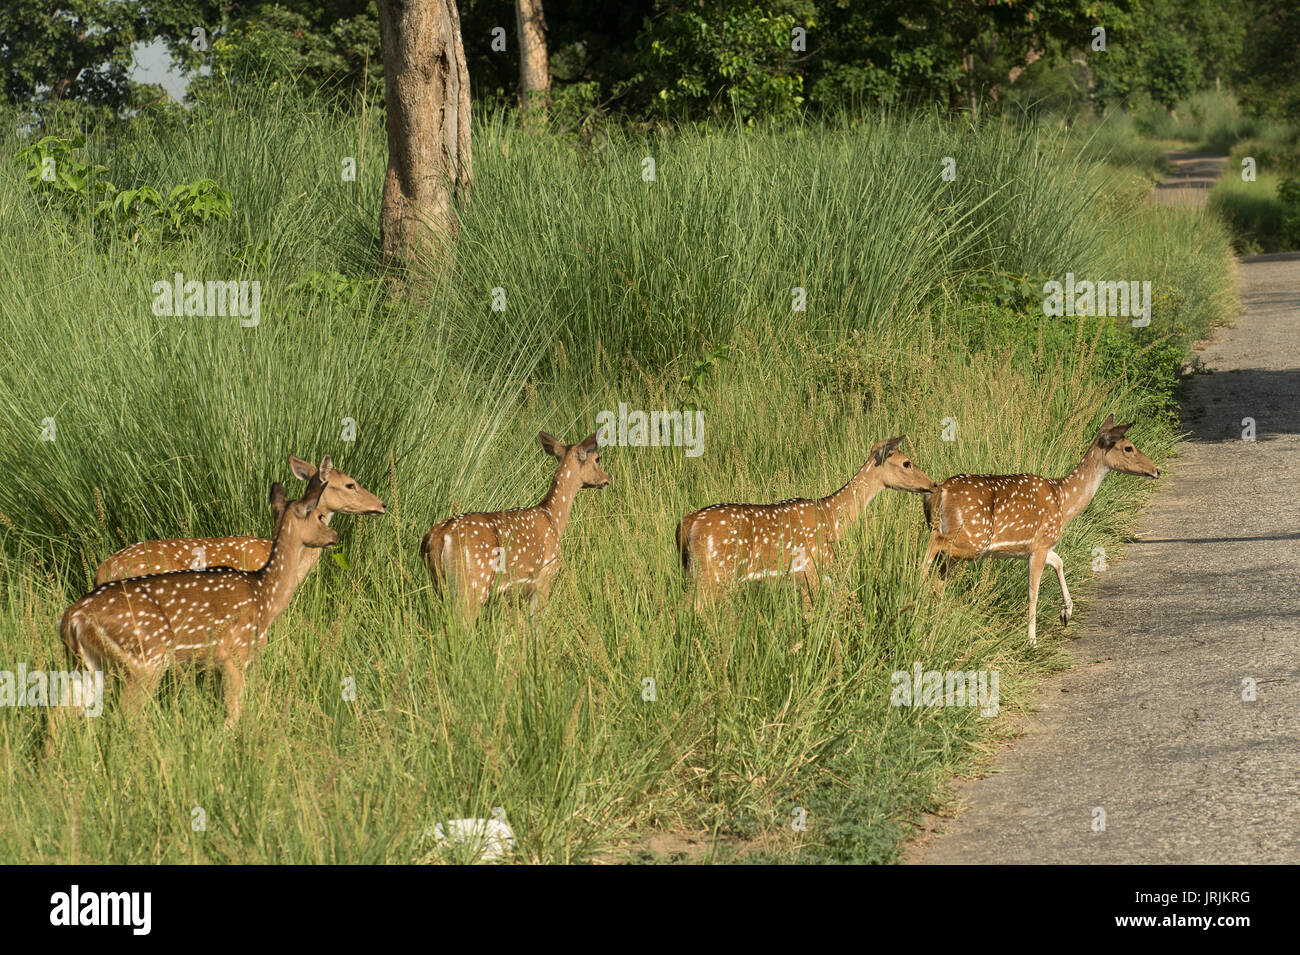 Repéré Dee ou Cheetal, Axis axis, cervidés, parc national de Rajaji, Inde Banque D'Images